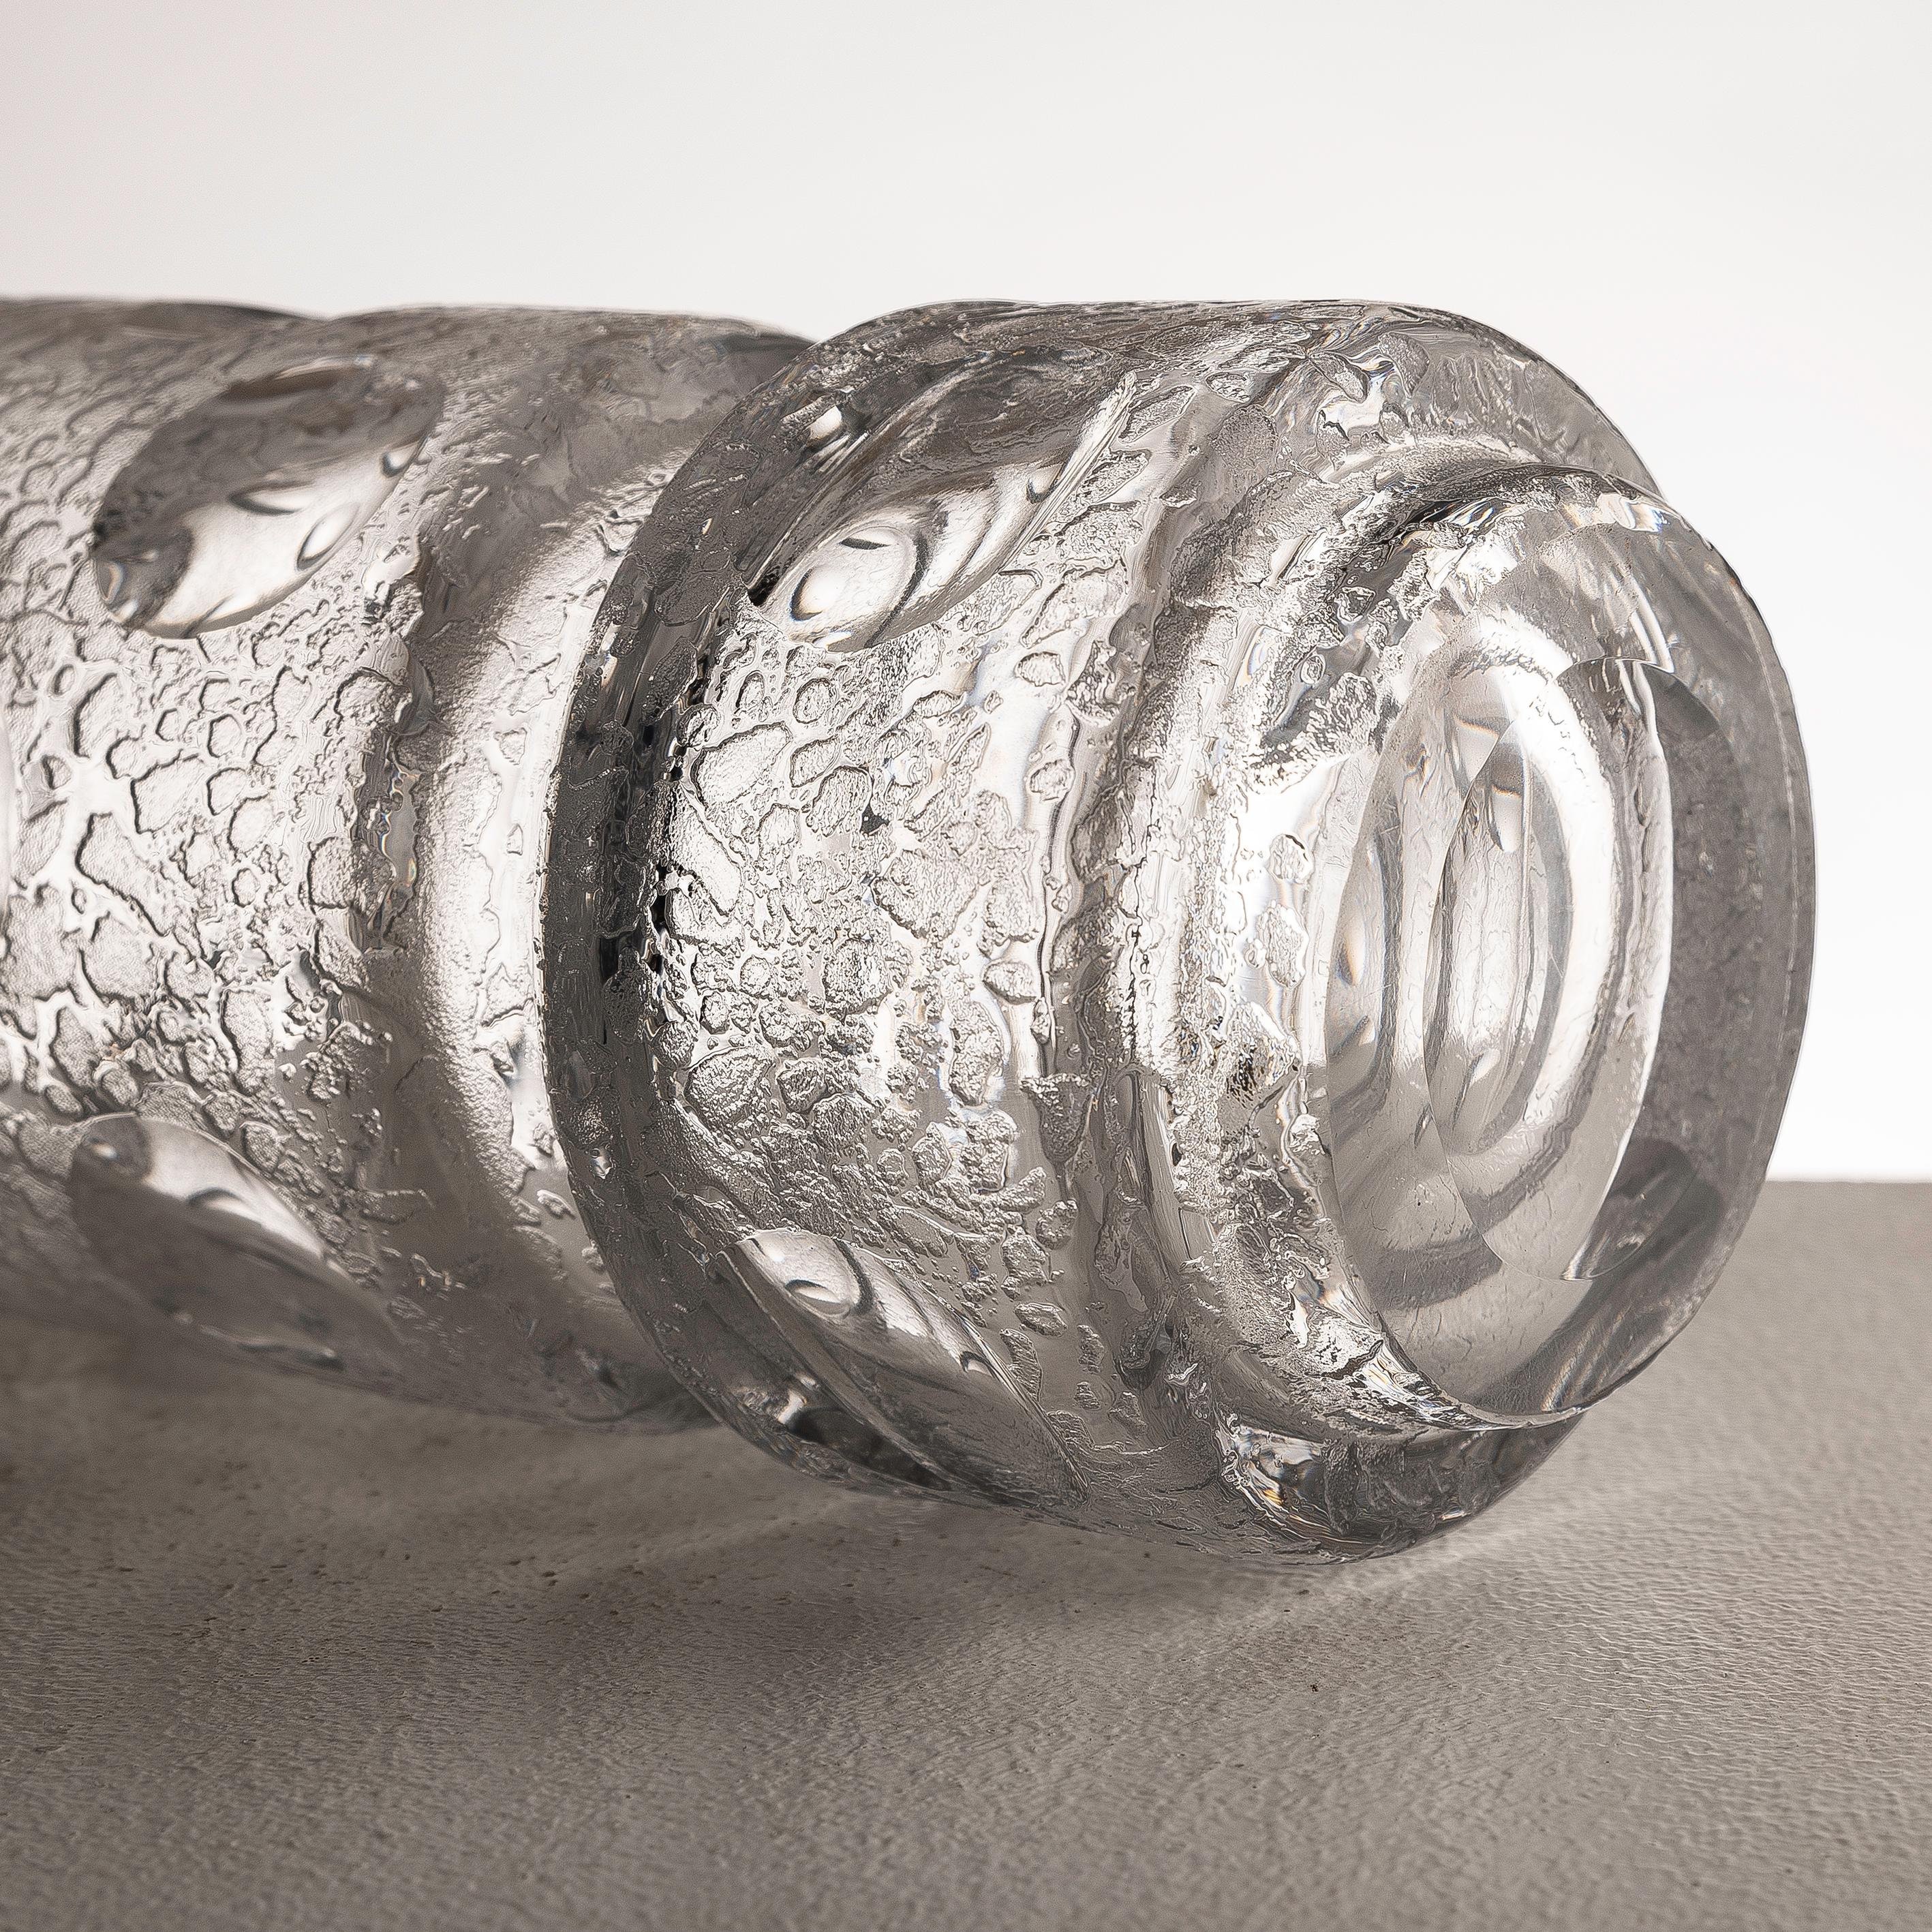 Investir dans ce vase en verre corrosif texturé et en verre hyalin taillé datant du milieu du XXe siècle offre une occasion captivante d'acquérir une pièce d'artisanat exquise et d'ingéniosité artistique. La combinaison des techniques de corroso et